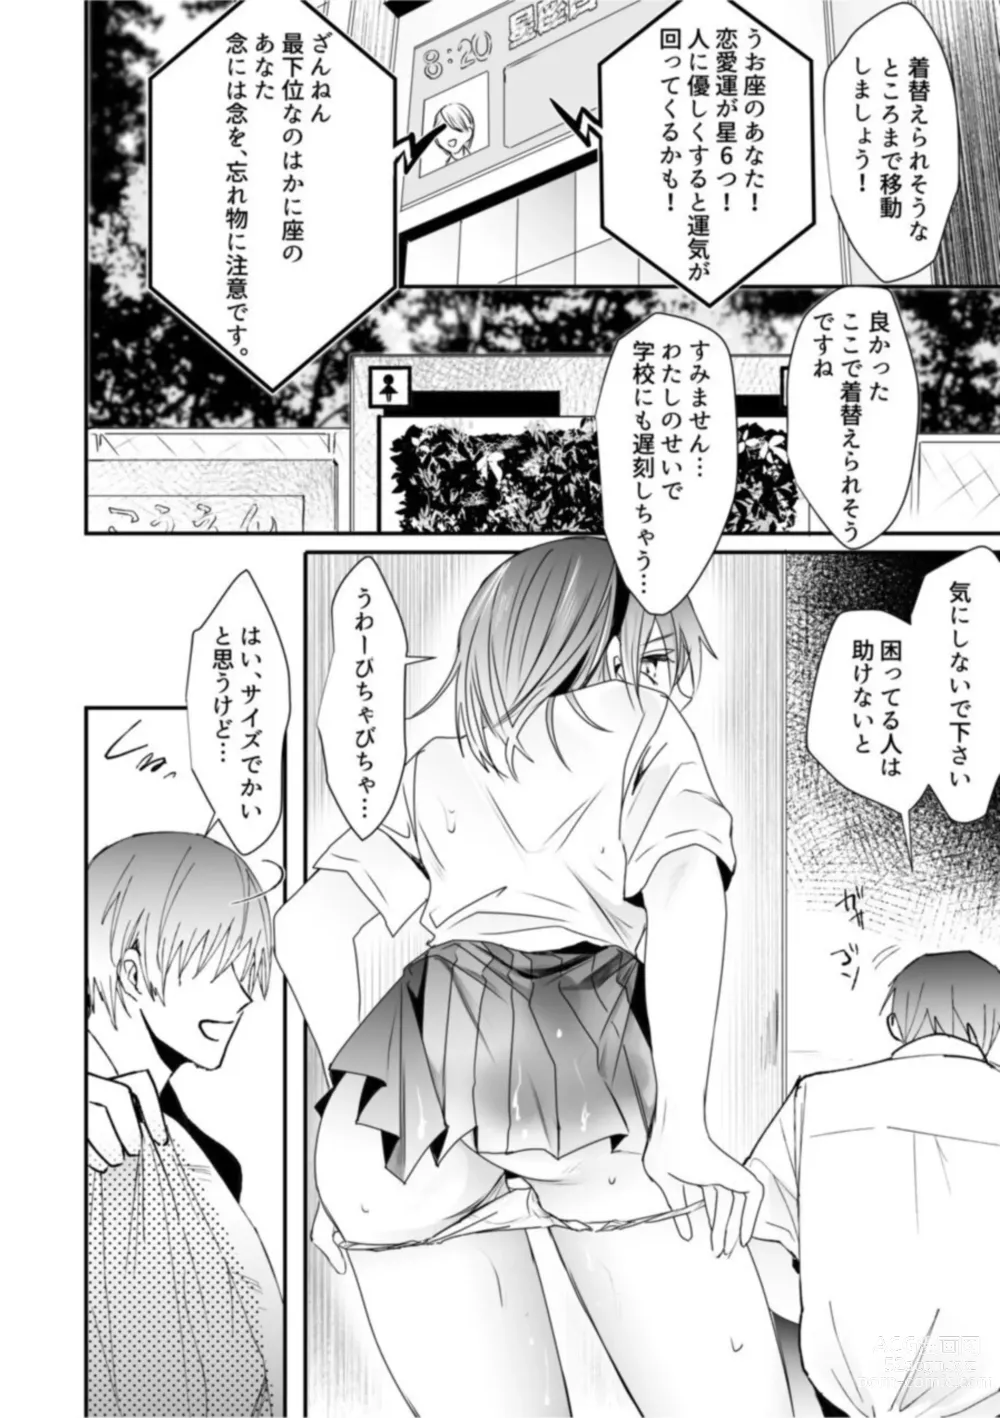 Page 8 of manga Chichiatsu Nadeshiko 1